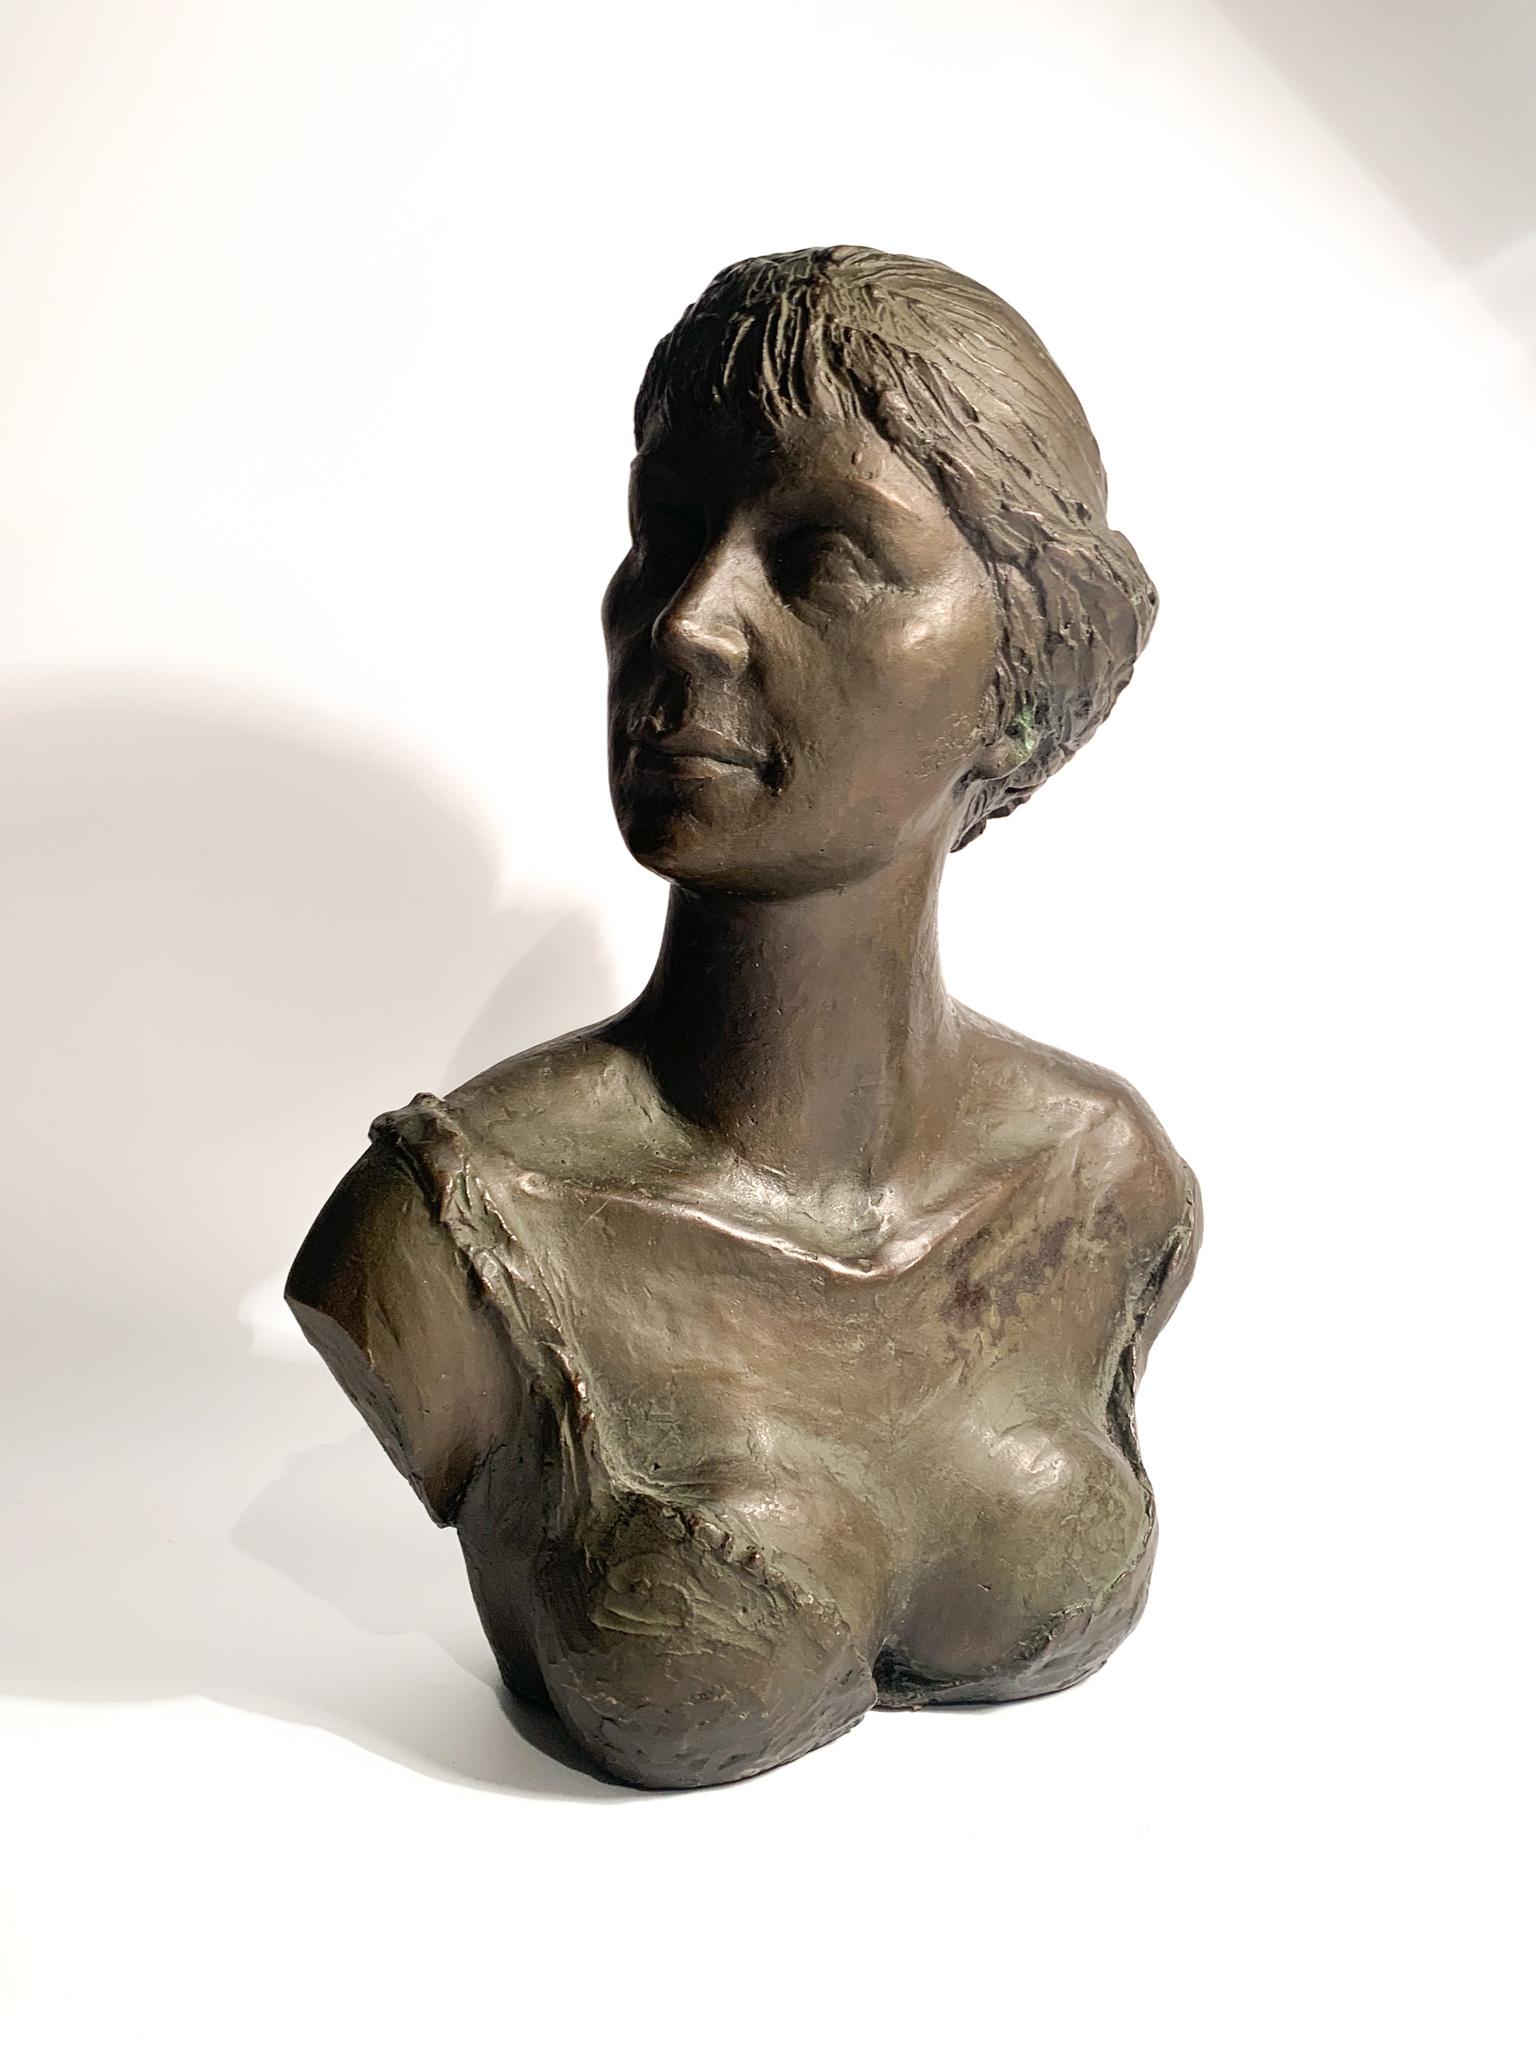 Buste féminin en bronze réalisé selon la technique de la cire perdue, créé par Giuseppe Motti (1908 - 1988) dans les années 1950.

Ø 24 cmØ 12 cm h 31 cm